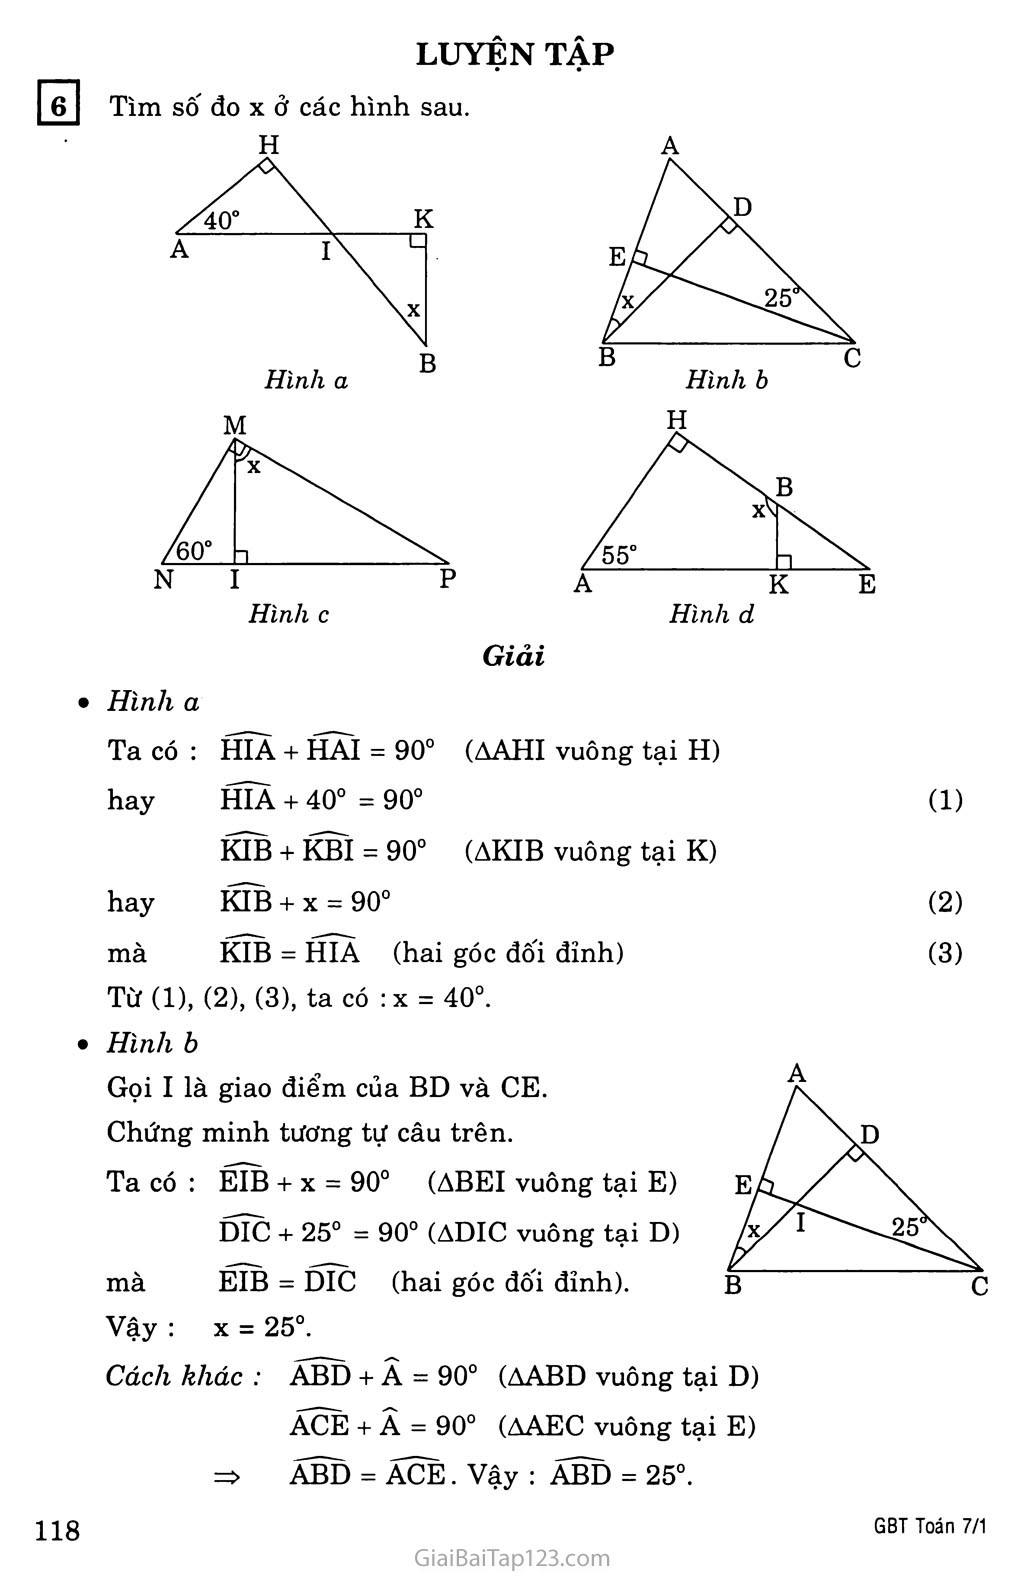 §1. Tổng ba góc của một tam giác trang 5